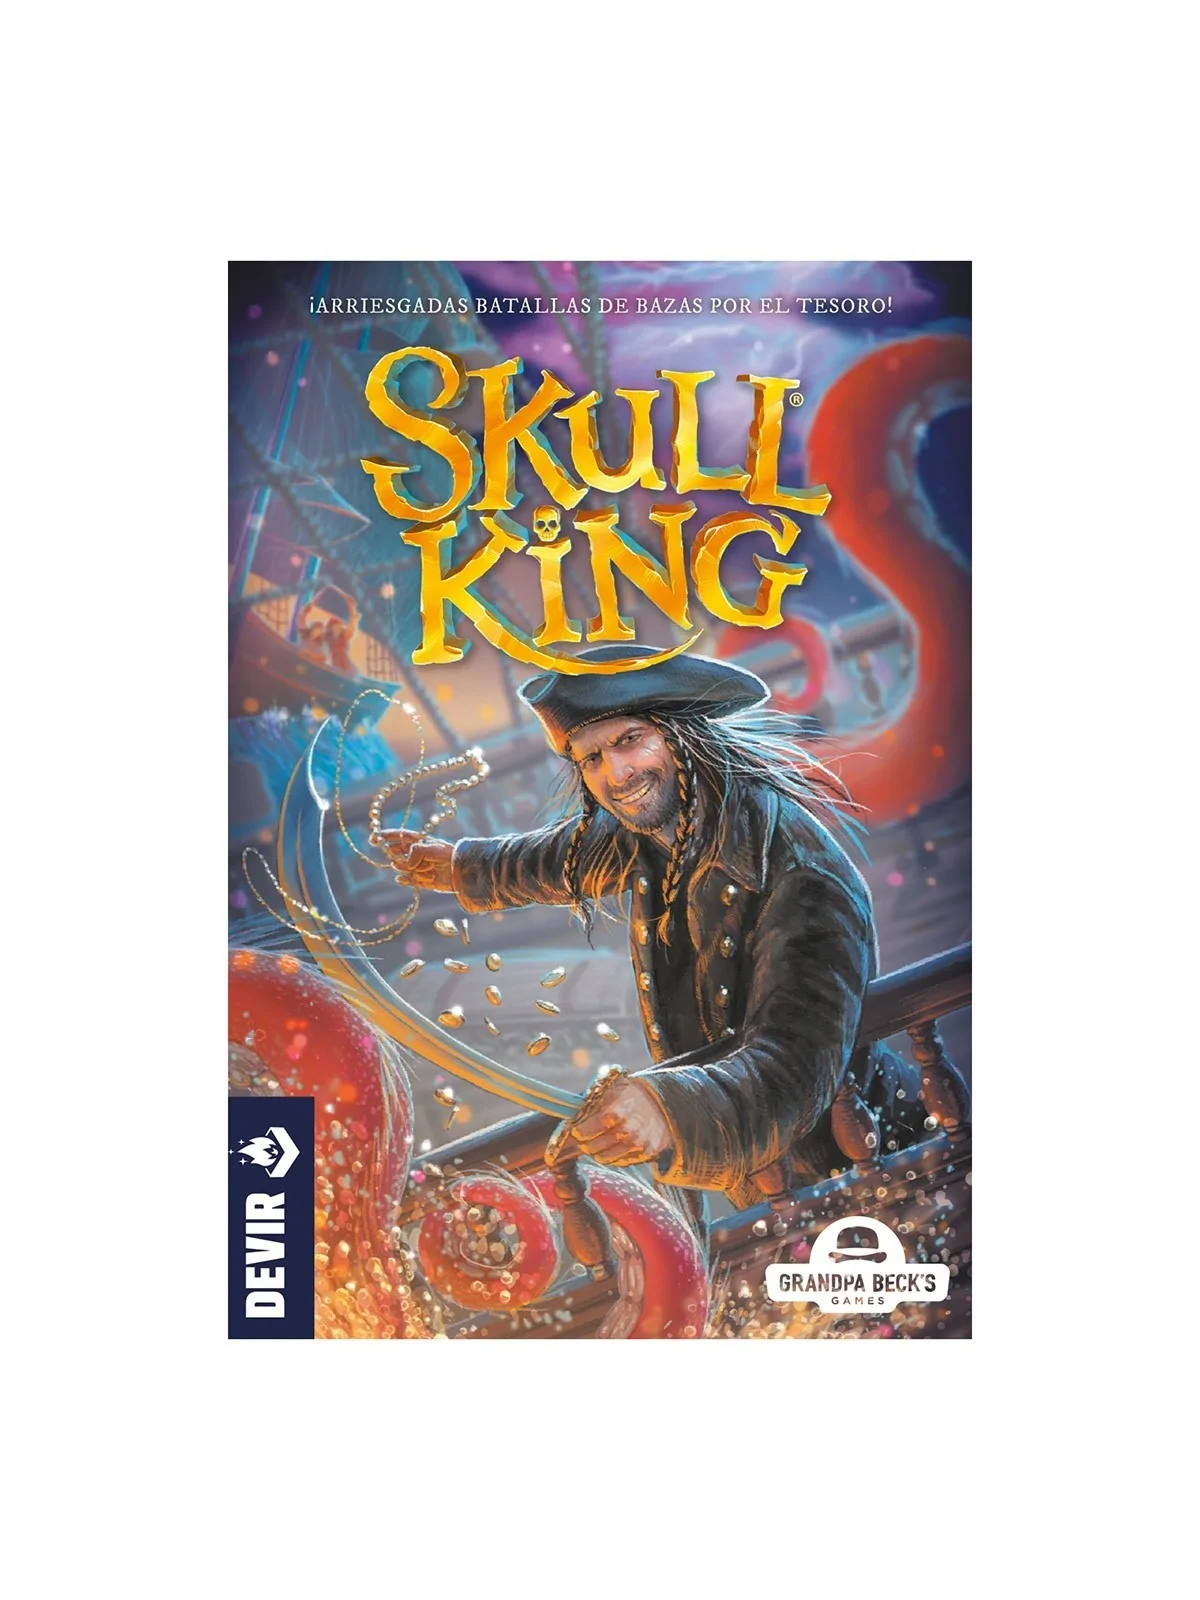 Comprar Skull King (Nueva Edicion) barato al mejor precio 20,00 € de D